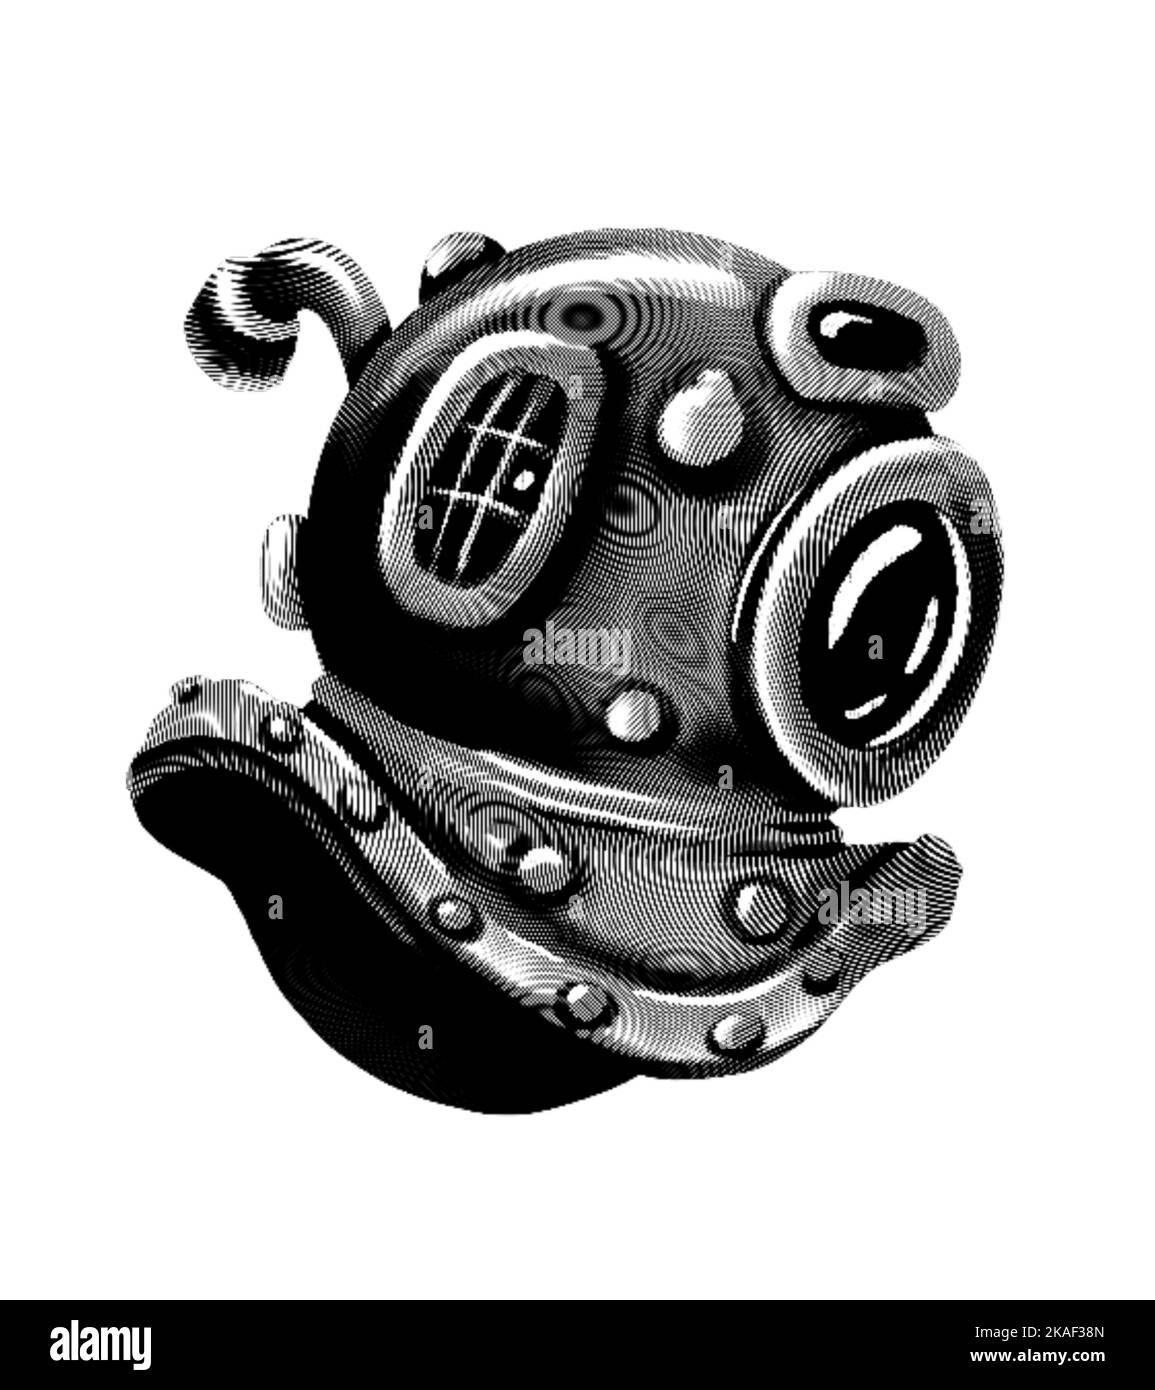 Gravur eines Unterwasserhelms. Realistische Darstellung eines Seehelms. Schwarz-Weiß-Zeichnung Stockfoto